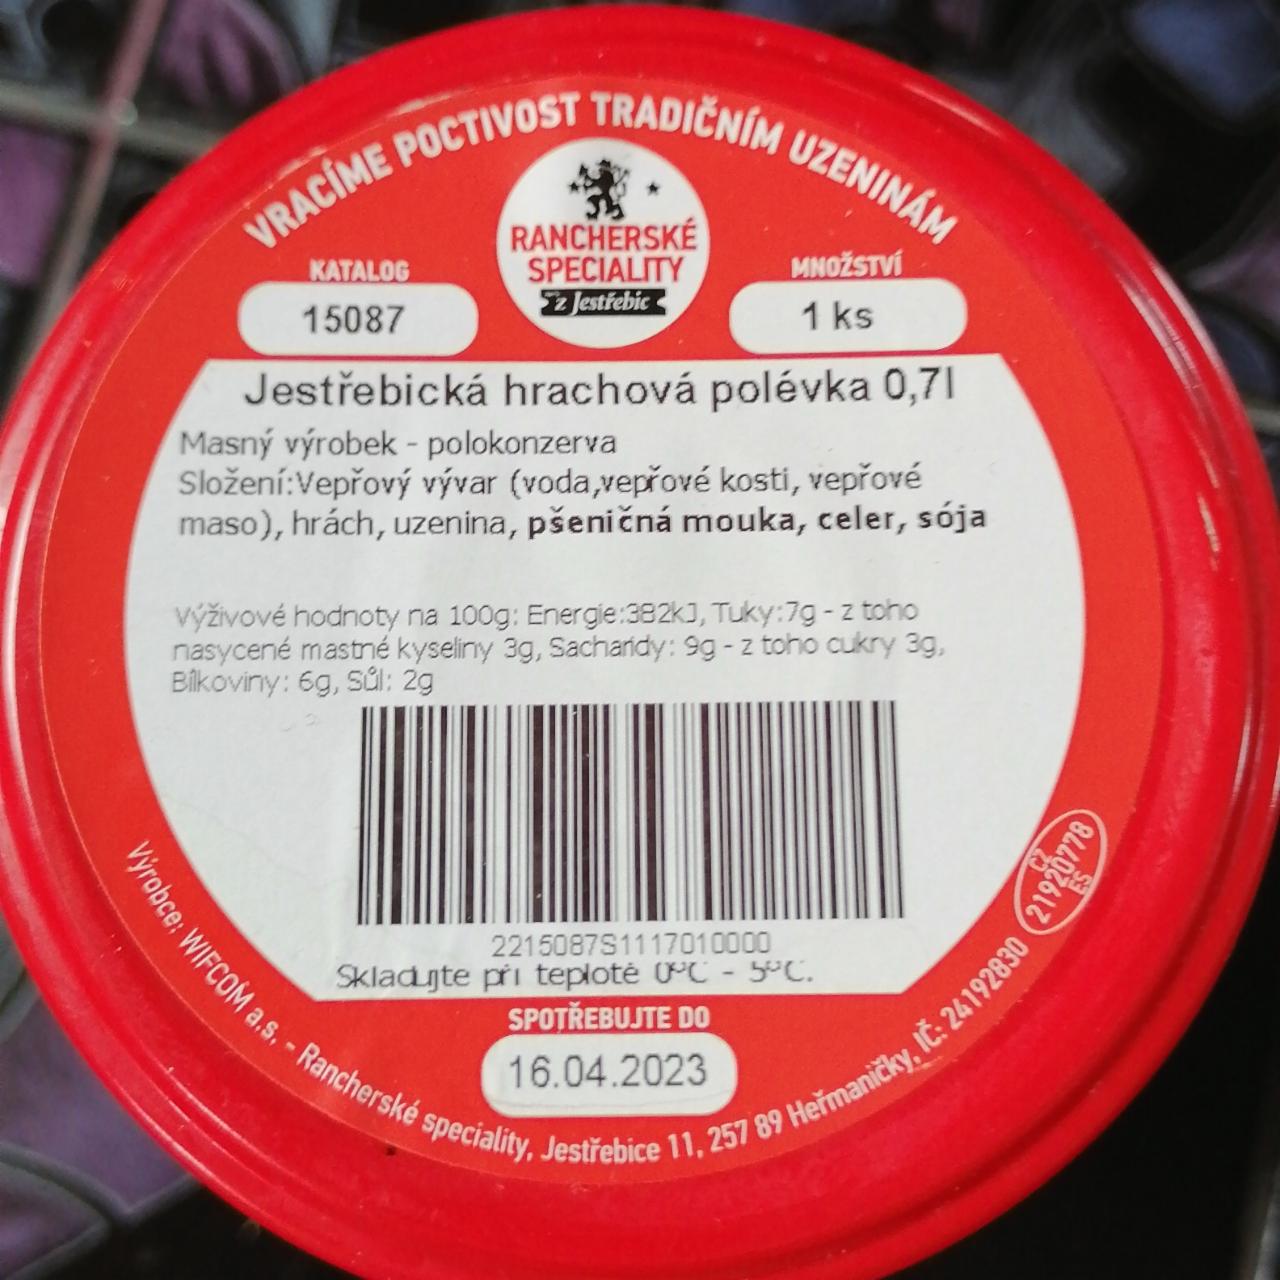 Fotografie - Jestřebická hrachová polévka Rancherské speciality